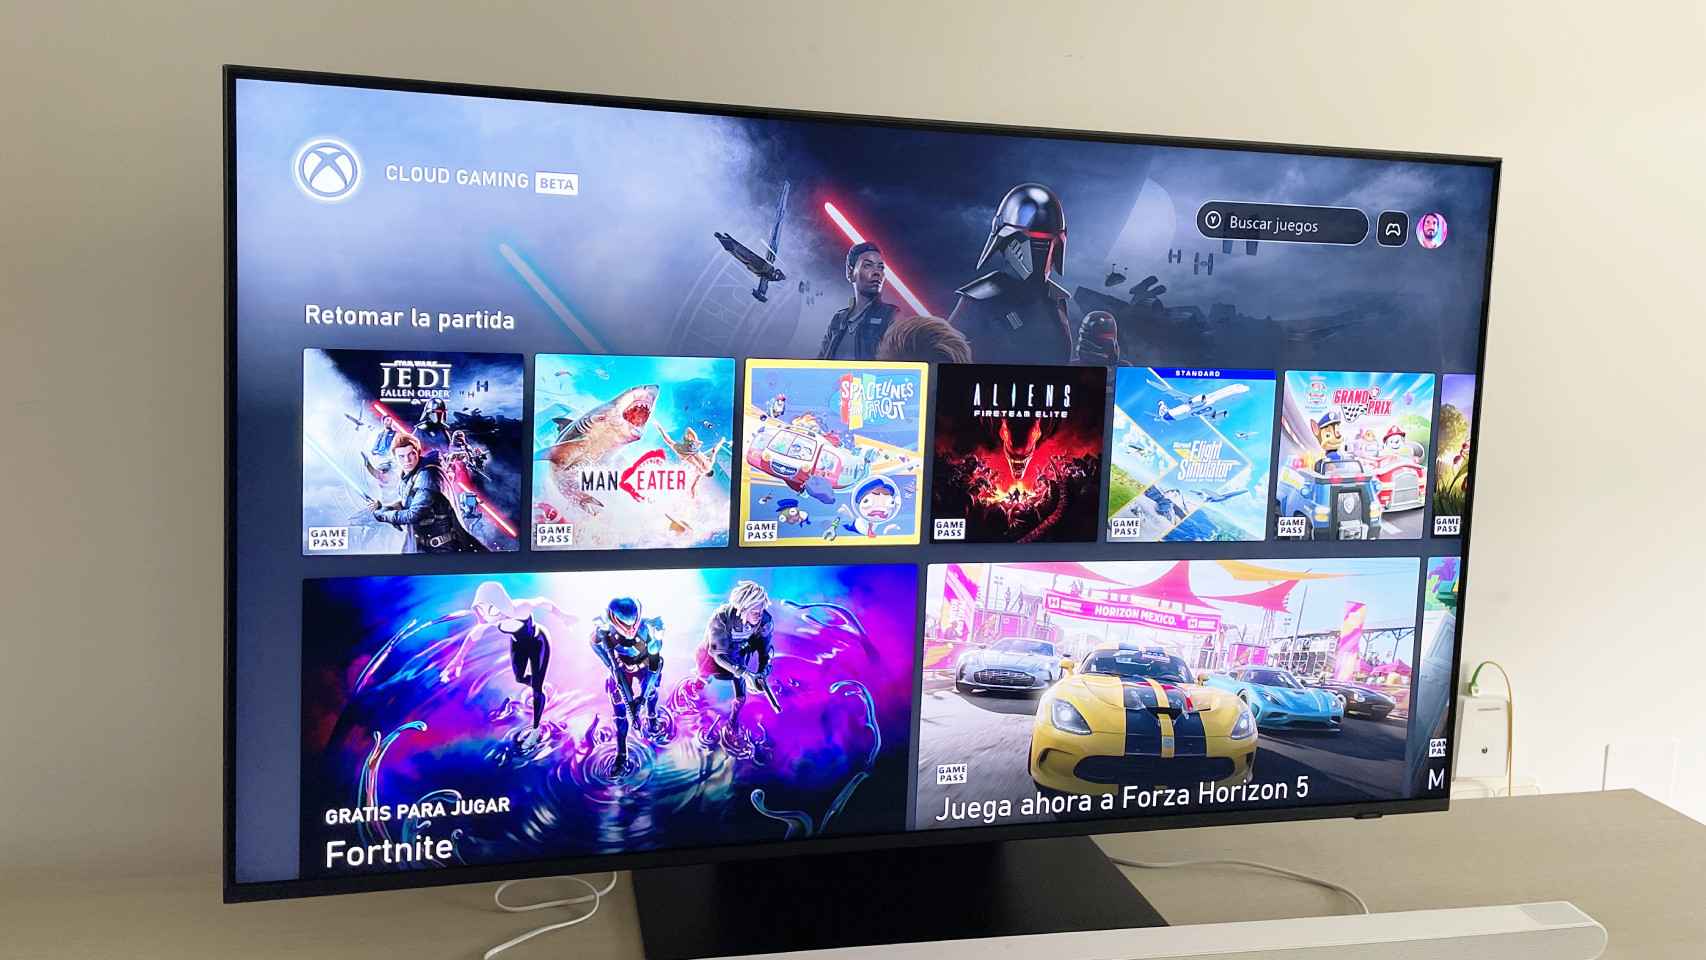 Xbox Cloud Gaming en el televisor de Samsung.